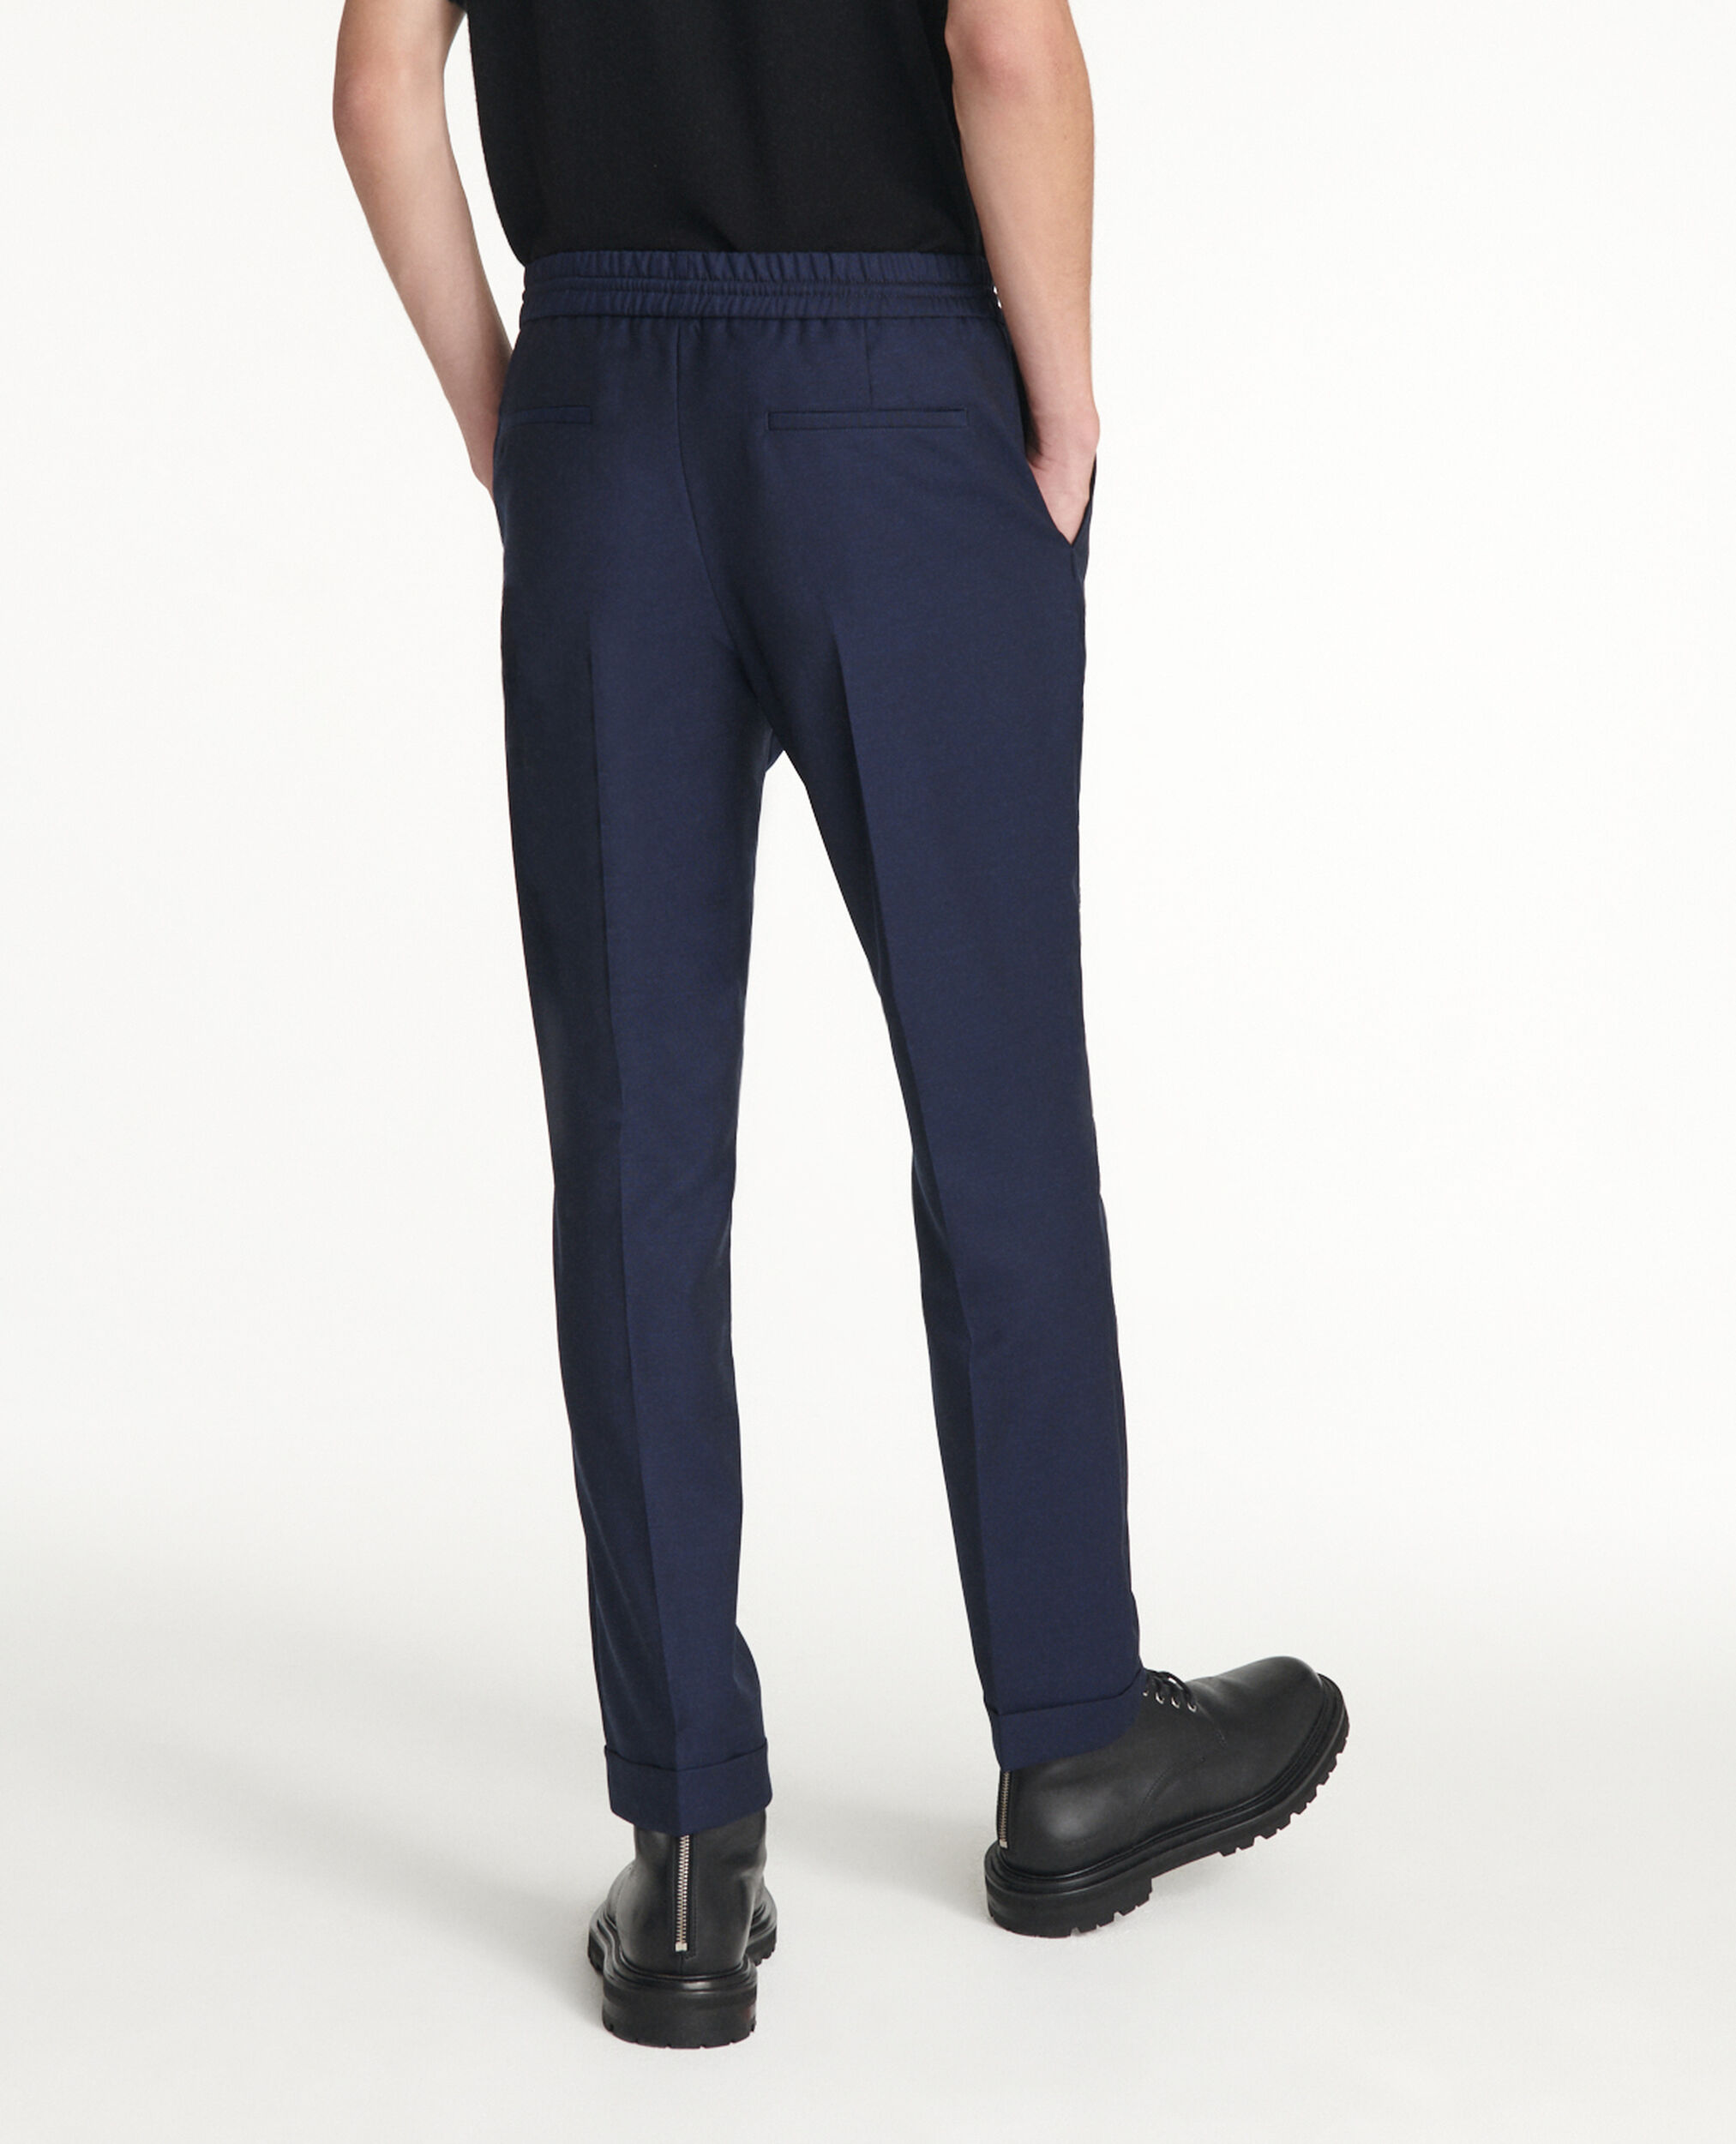 Pantalon en laine bleu taille élastique, NAVY, hi-res image number null